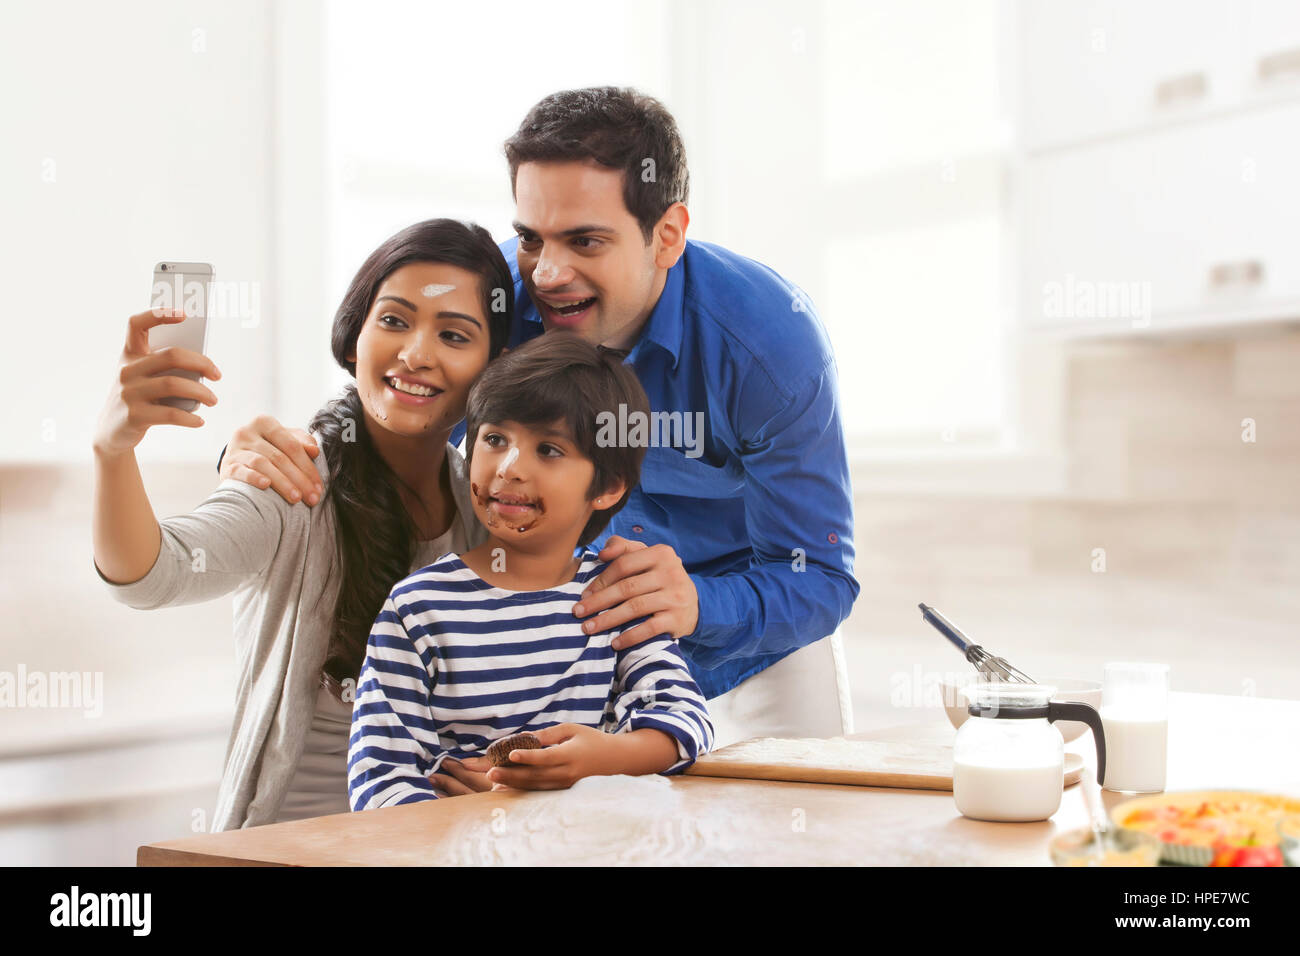 Familie nehmen Selfie während des Backens Stockfoto